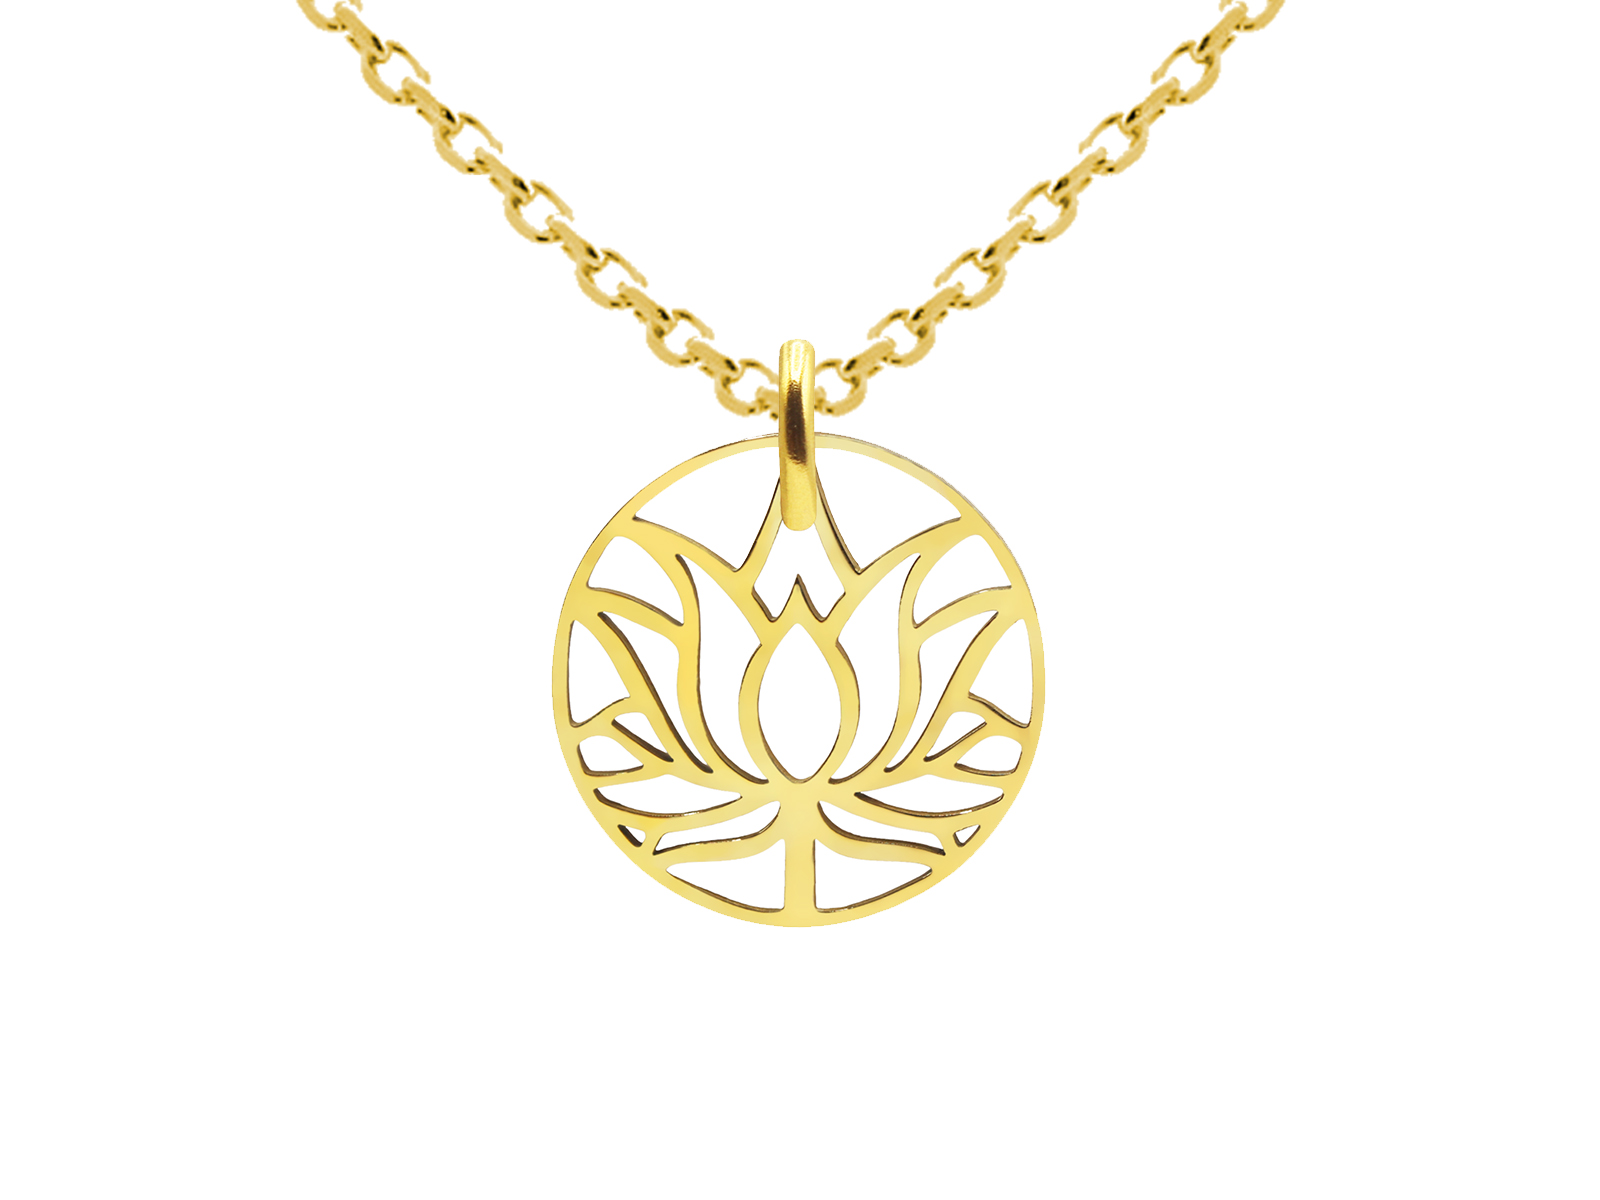 Collier pendentif fleur de lotus en acier inoxydable doré